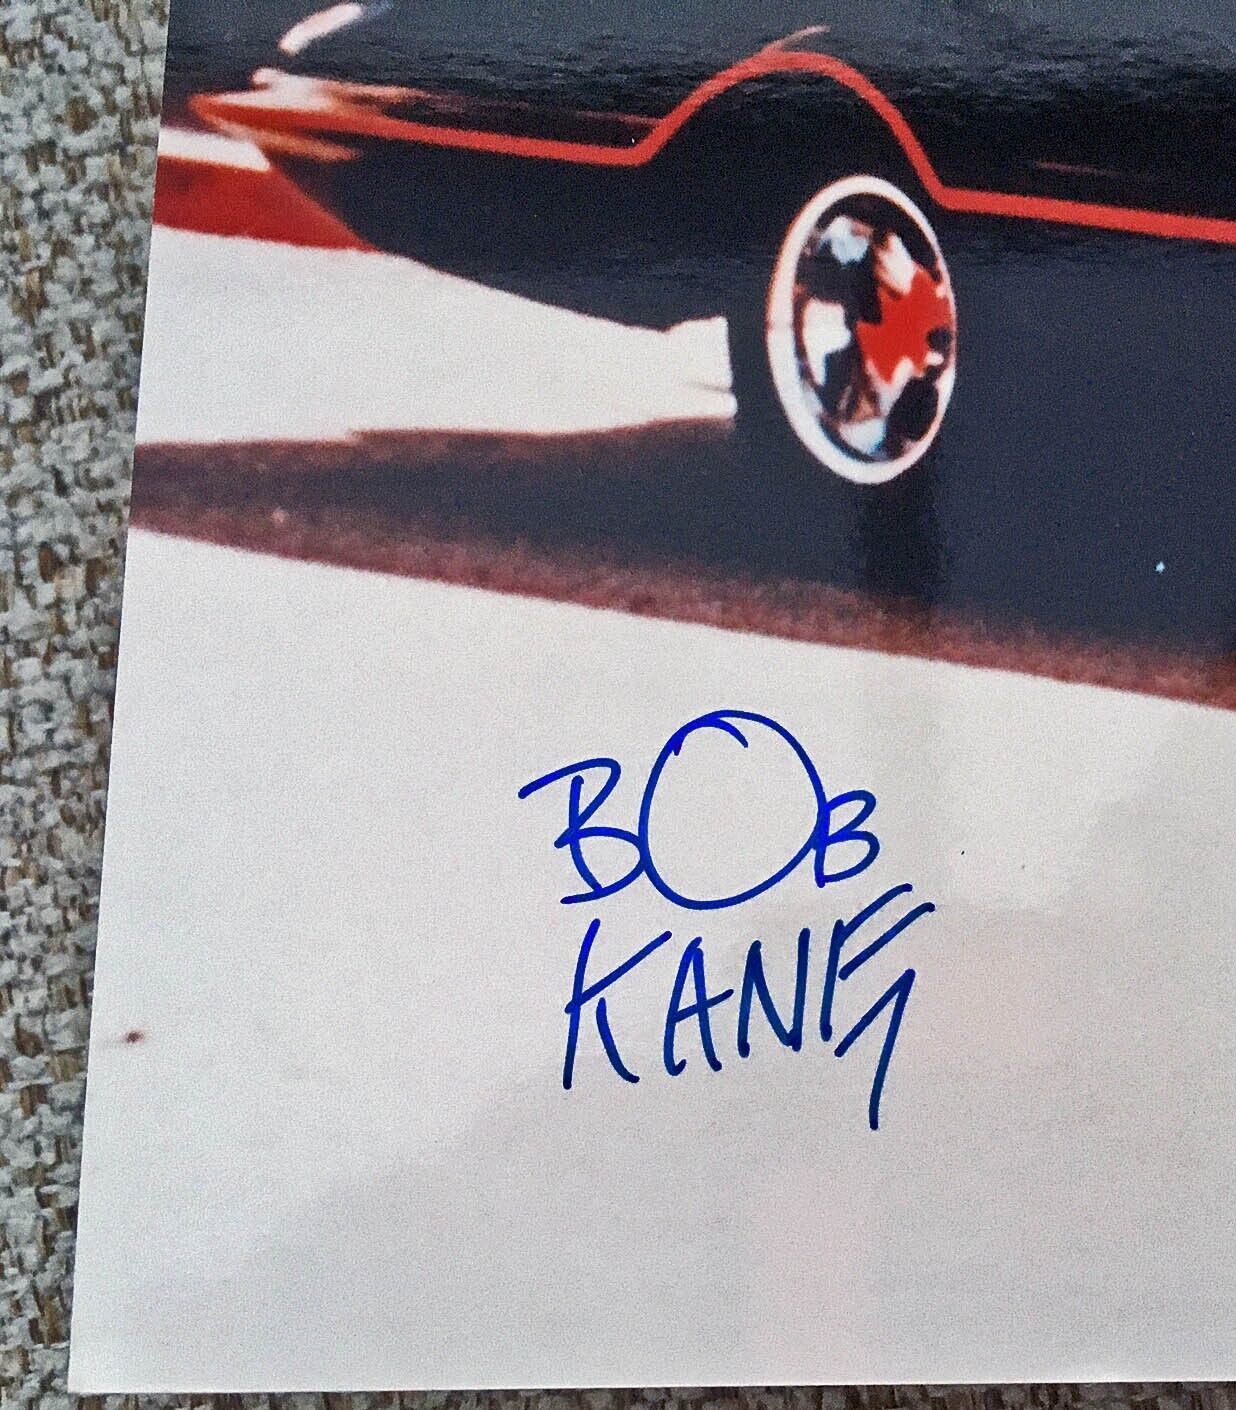 *RARE Signed Bob Kane BATMAN Photo + COA